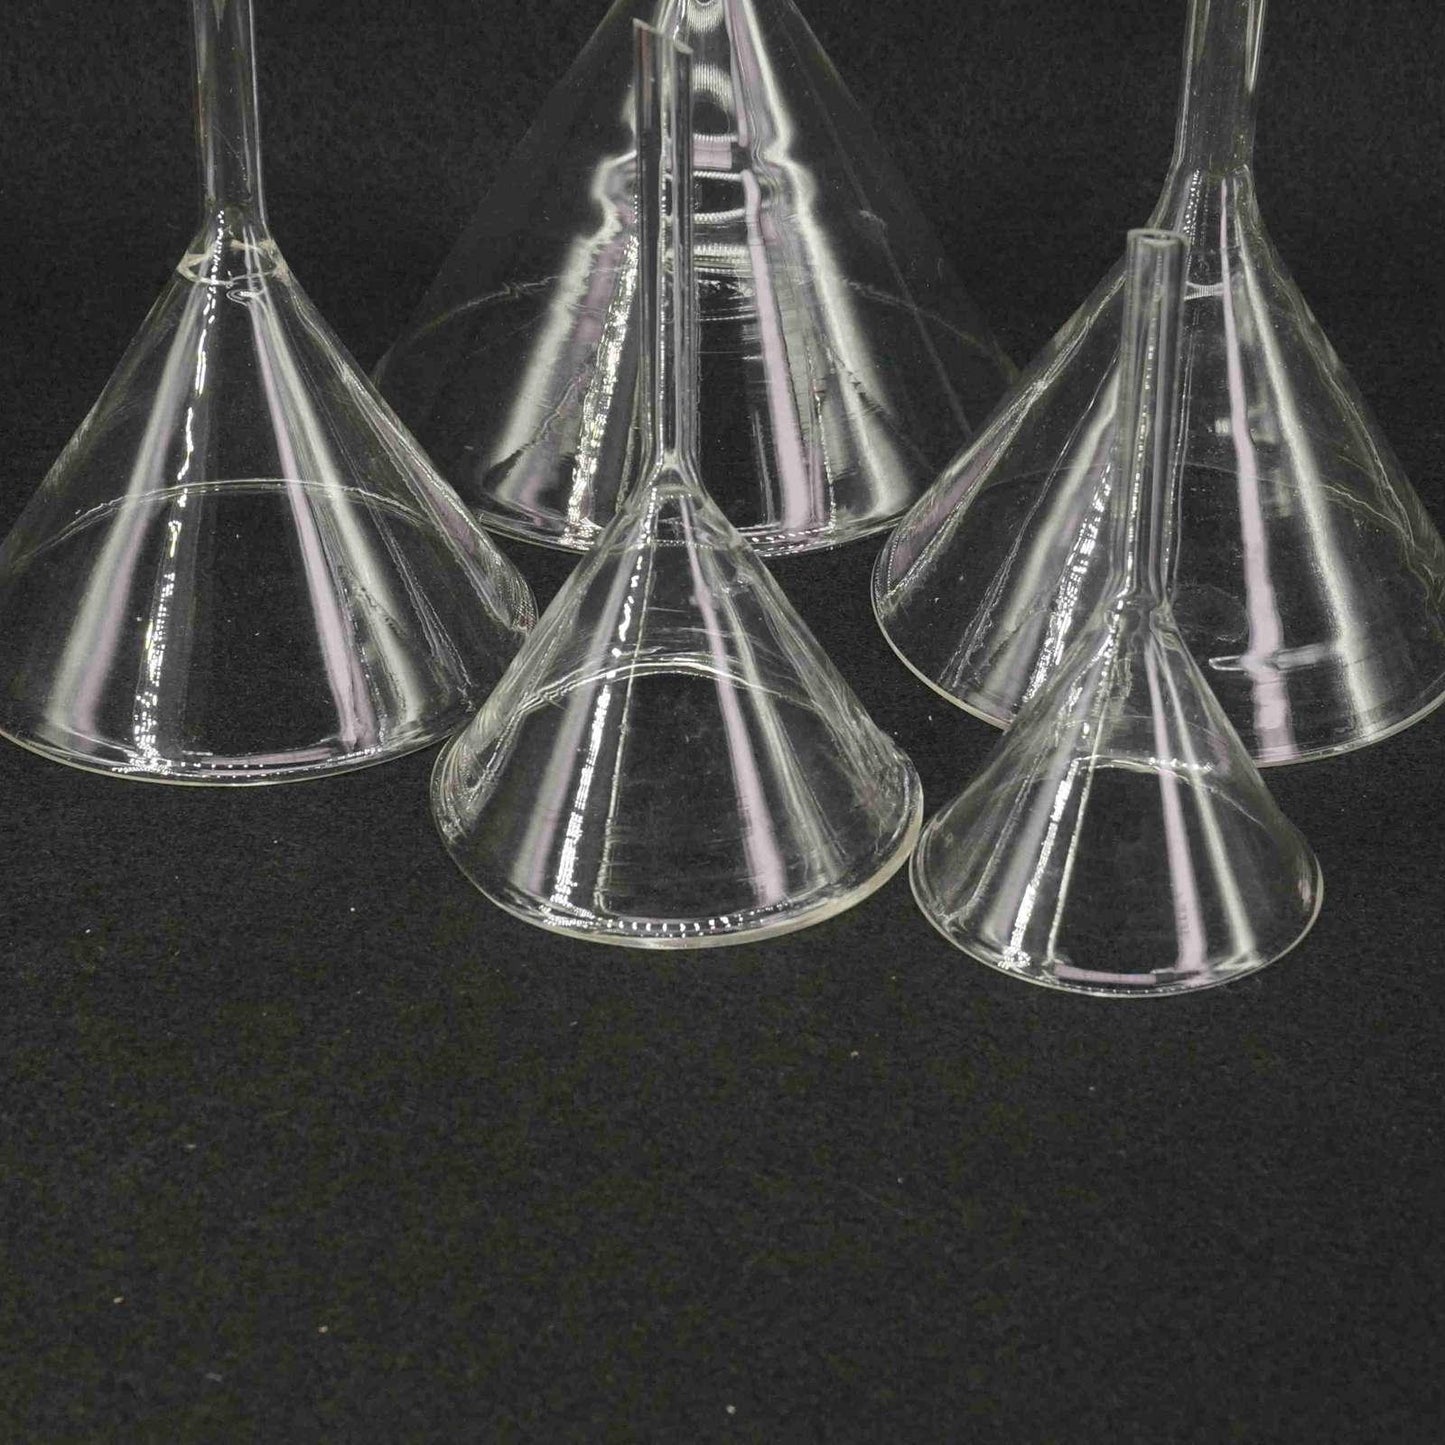 40mm-50mm-60mm-75mm-80mm-90mm-100mm-120mm-lab7th-Miniature-Lab-Glass-Funnel-Borosilicat-Glassware-Triangle-Trichter